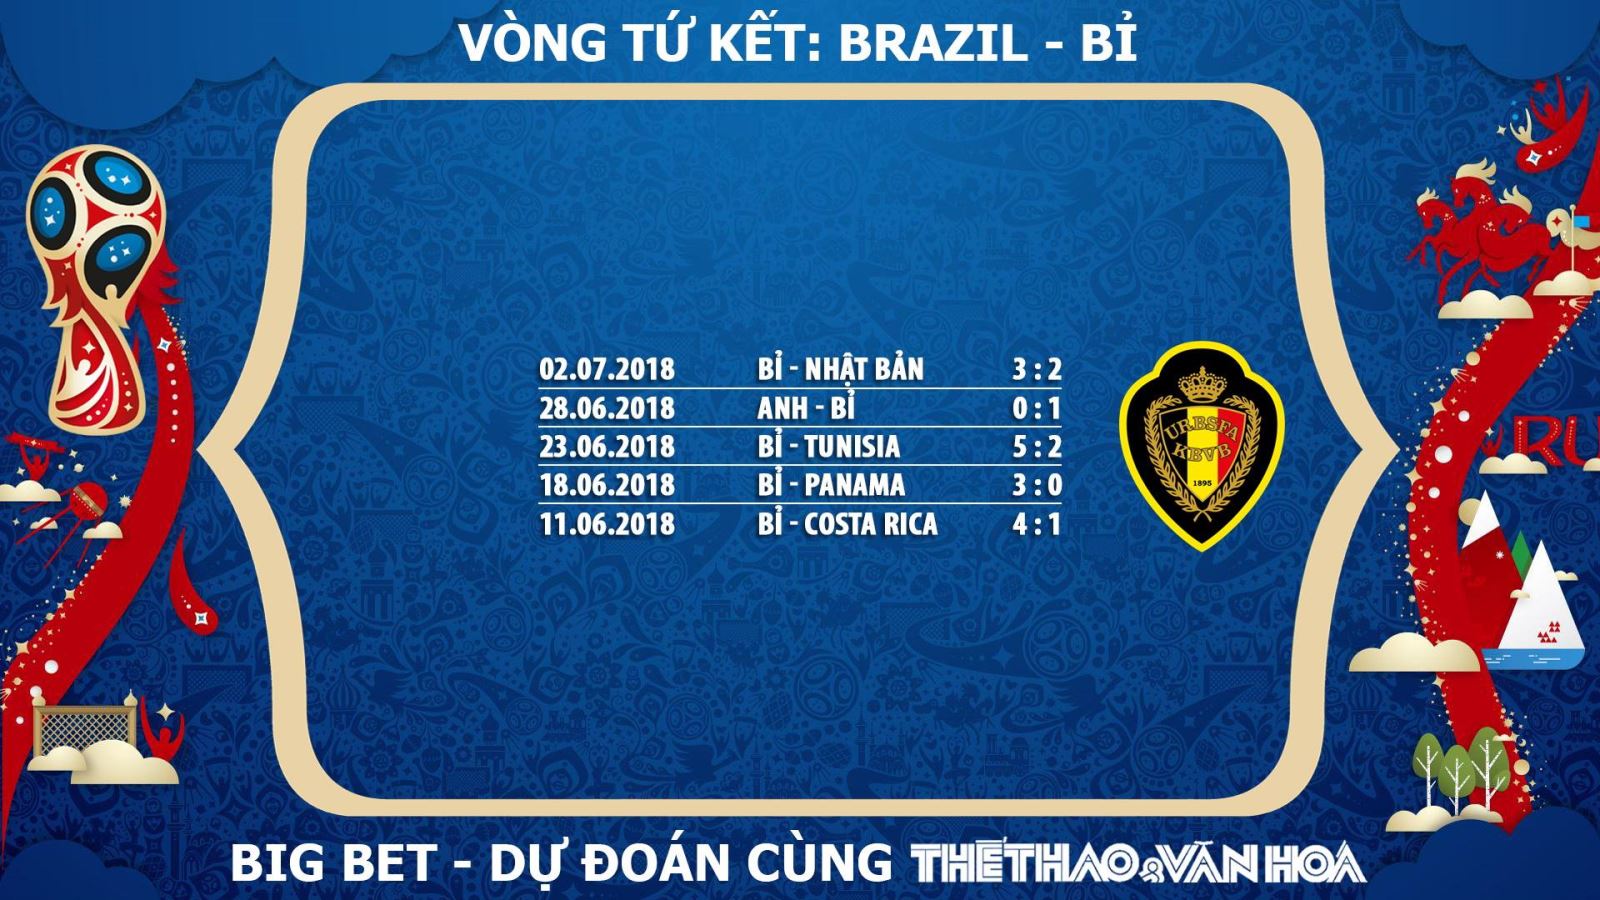 Dự đoán Bỉ, nhận định Bỉ, nhận định bóng đá Bỉ, chọn kèo Bỉ, tỉ lệ cá cược Bỉ, chọn cửa Bỉ, trực tiếp Bỉ, xem trực tiếp Bỉ, phong độ của Bỉ, Bỉ lọt vào Tứ kết, Bỉ lọt vào Bán kết World Cup 2018